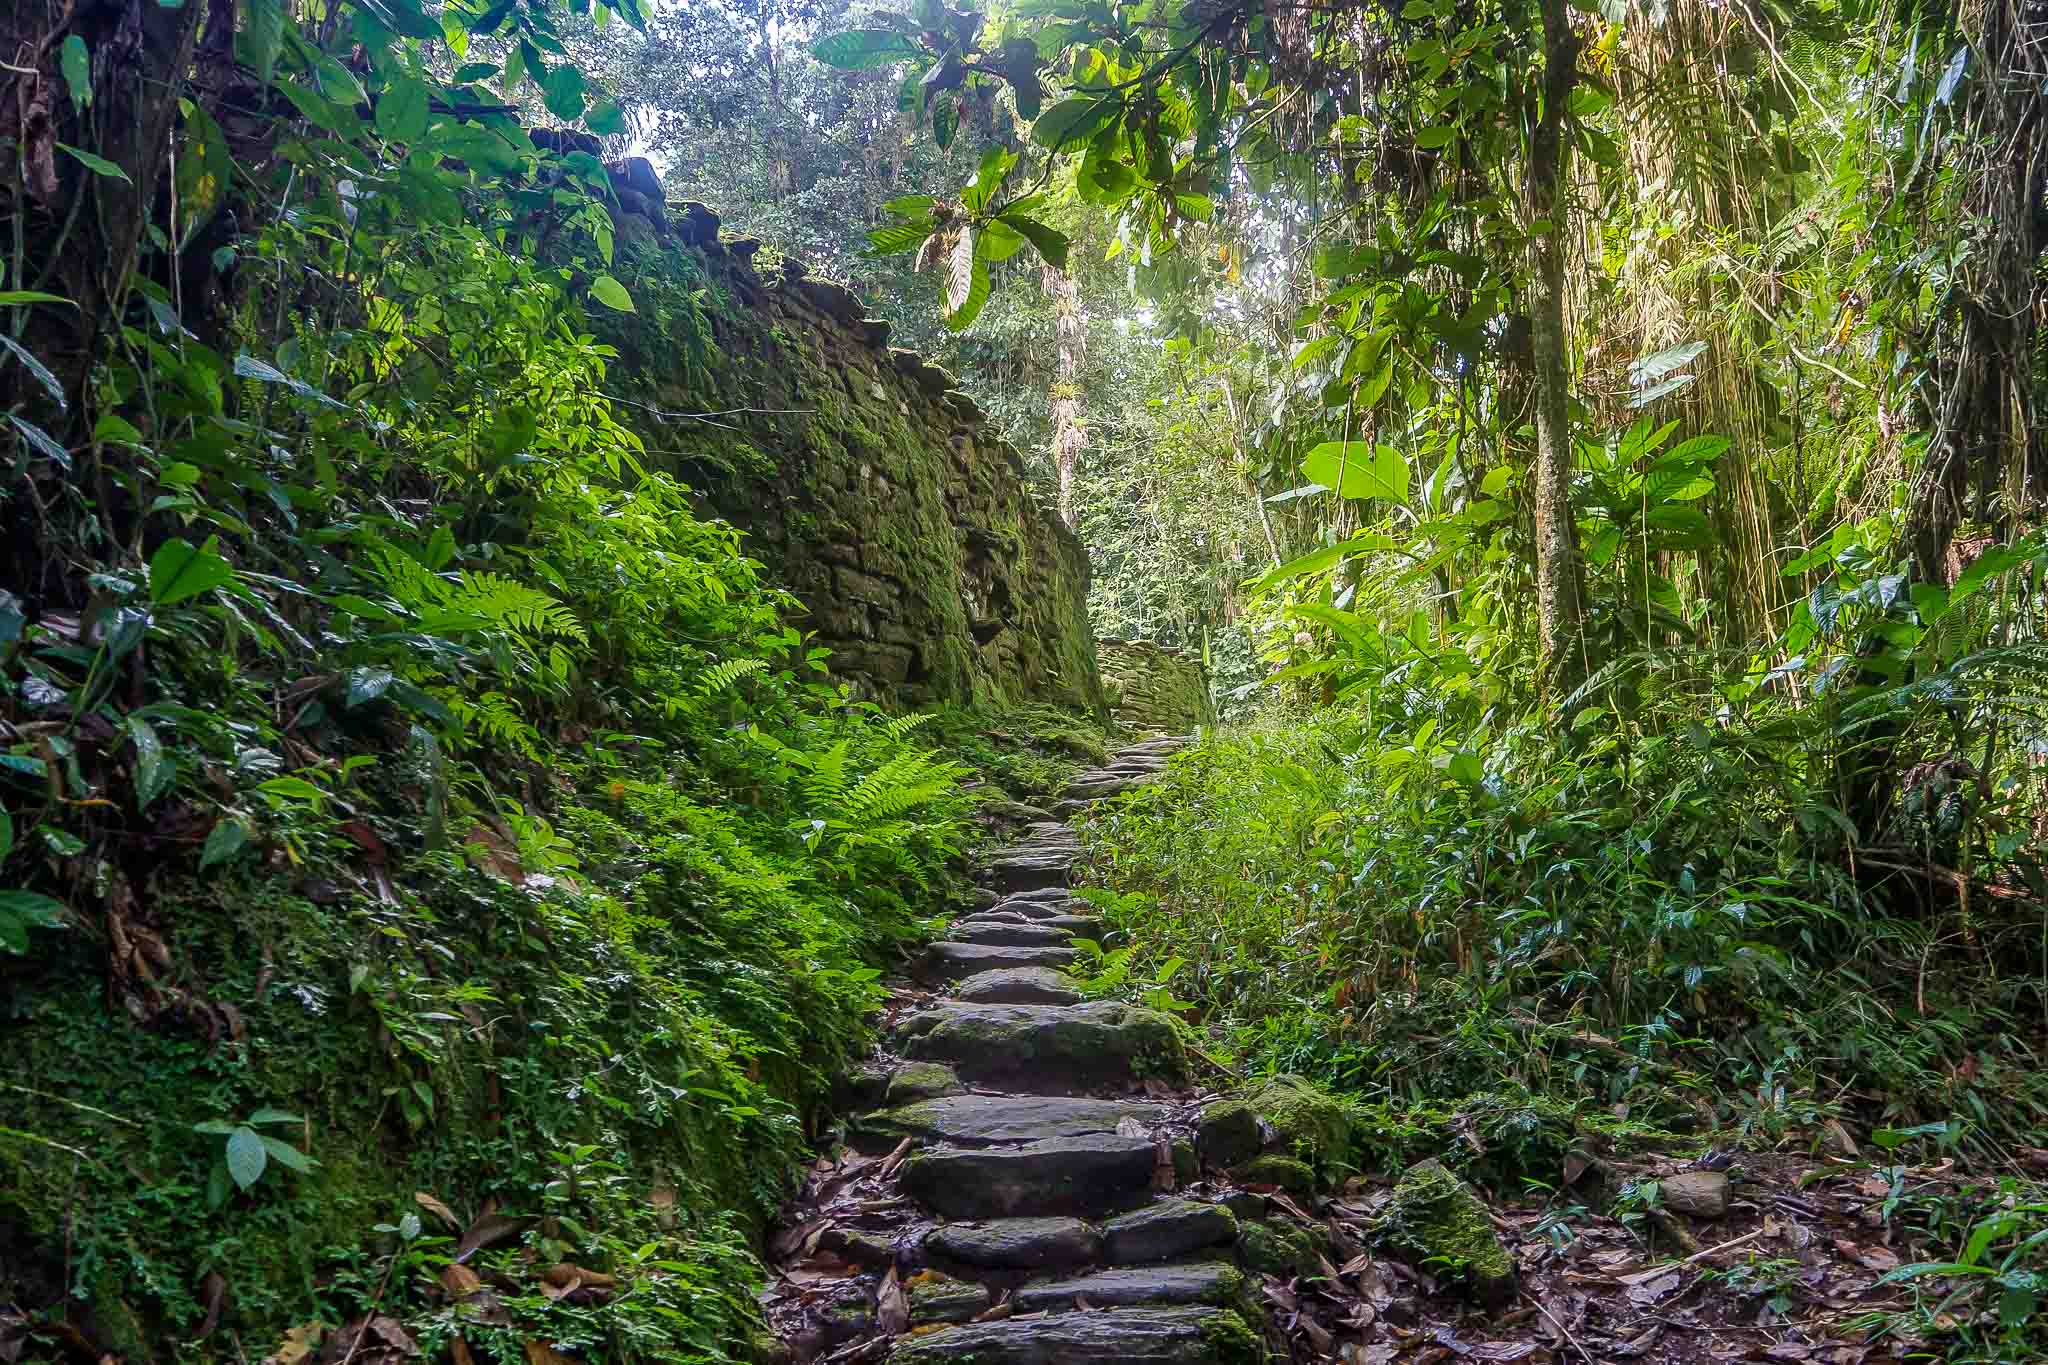 Trekking durch den tropischen Regenwald zur Ciudad Perdida (Verlorene Stadt).

Trekking through the tropical rainforest to Ciudad Perdida (Lost City).